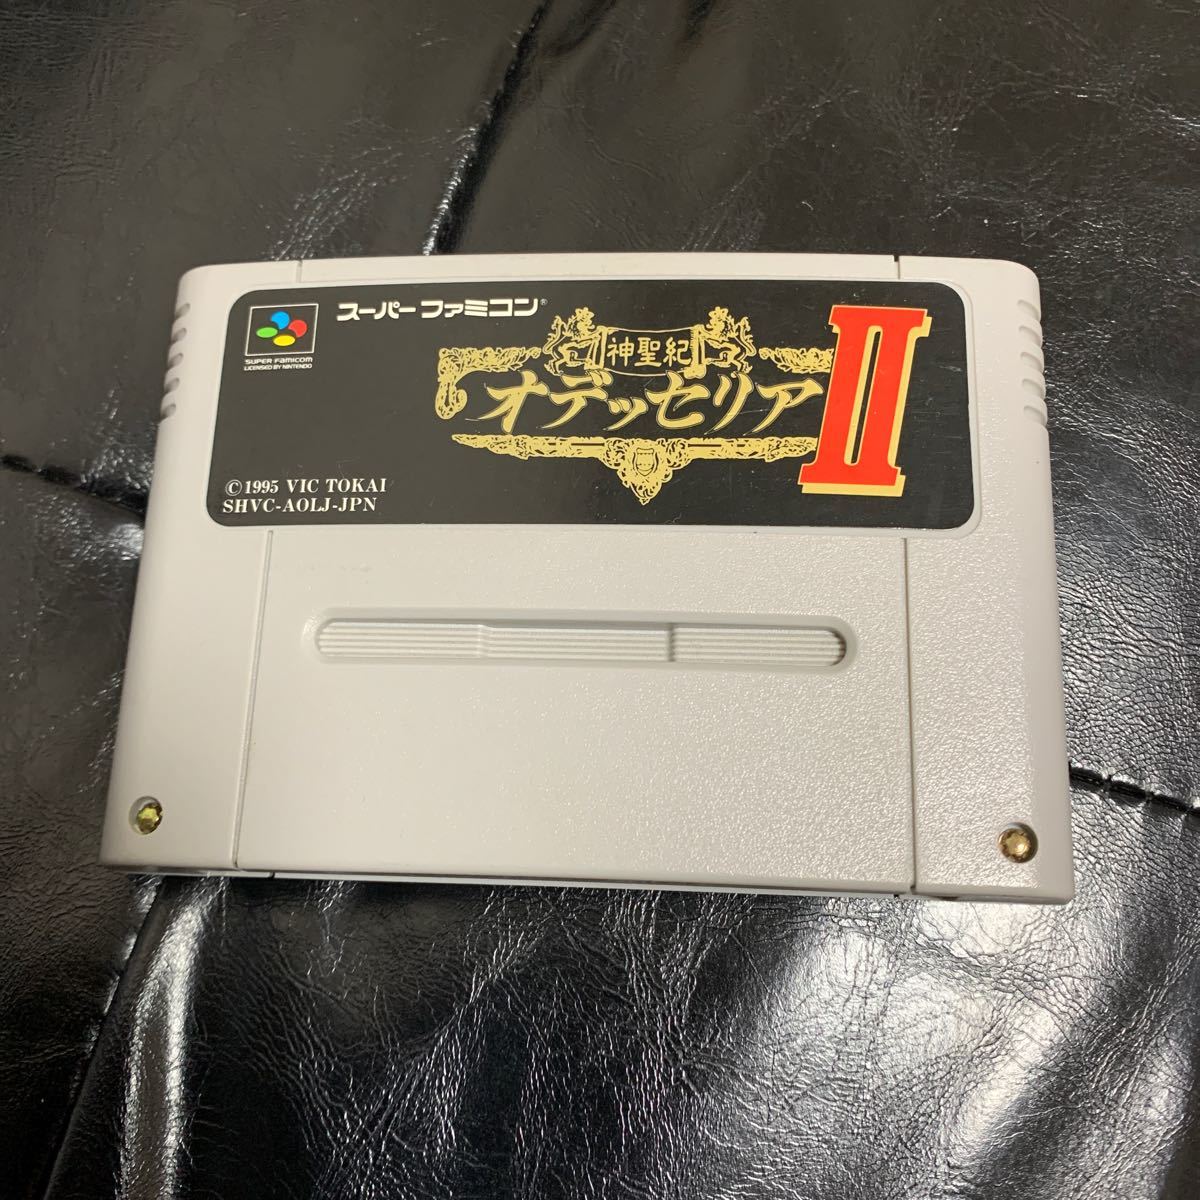 神聖紀 オデッセリア Ⅱ スーパーファミコン スーファミ カセット VIC TOKAI Nintendo 任天堂 _画像1